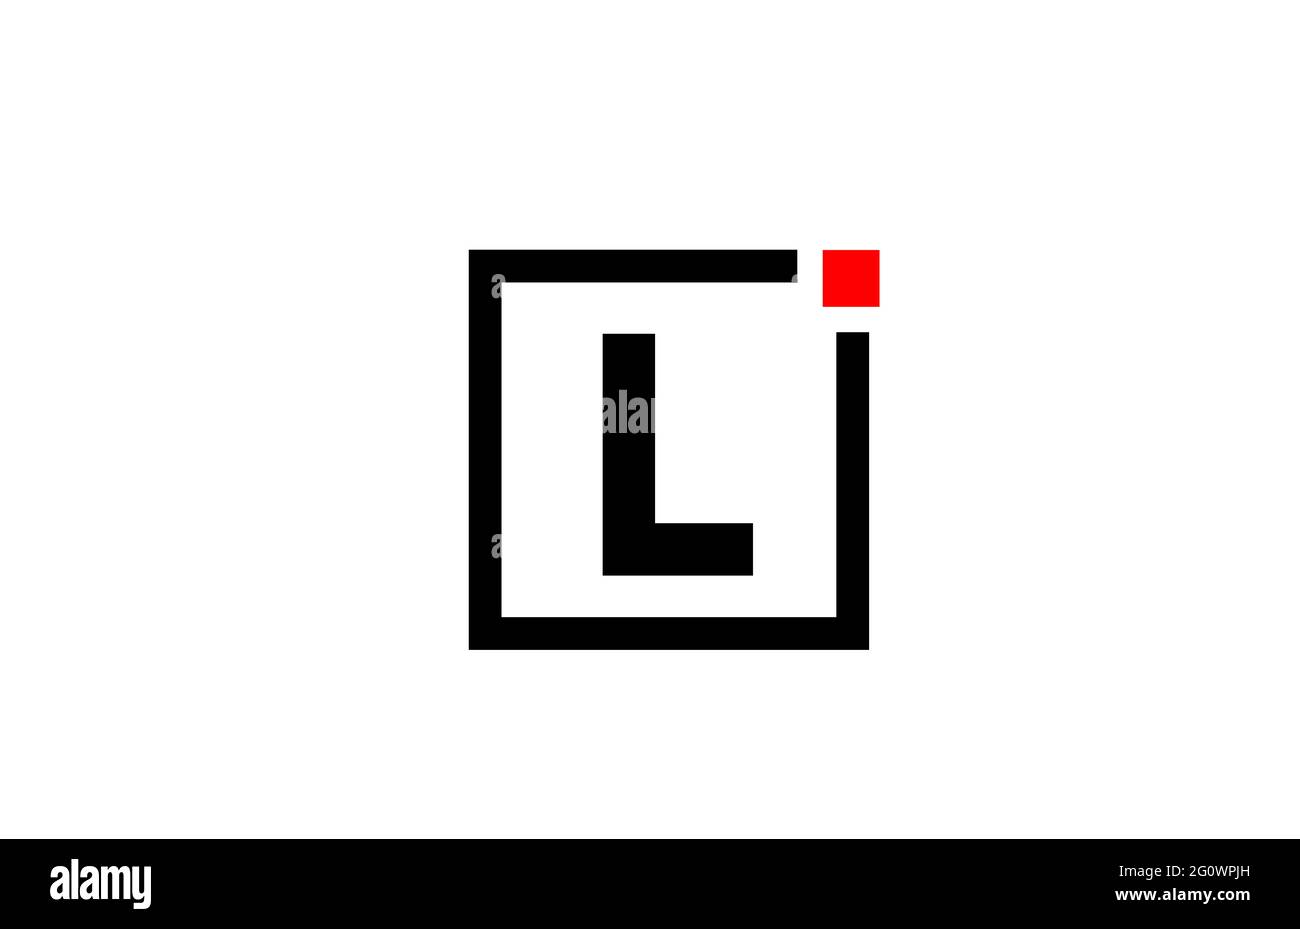 L logo dell'icona della lettera alfabetica in bianco e nero. Design aziendale e aziendale con punto quadrato e rosso. Modello di identità aziendale creativa Foto Stock